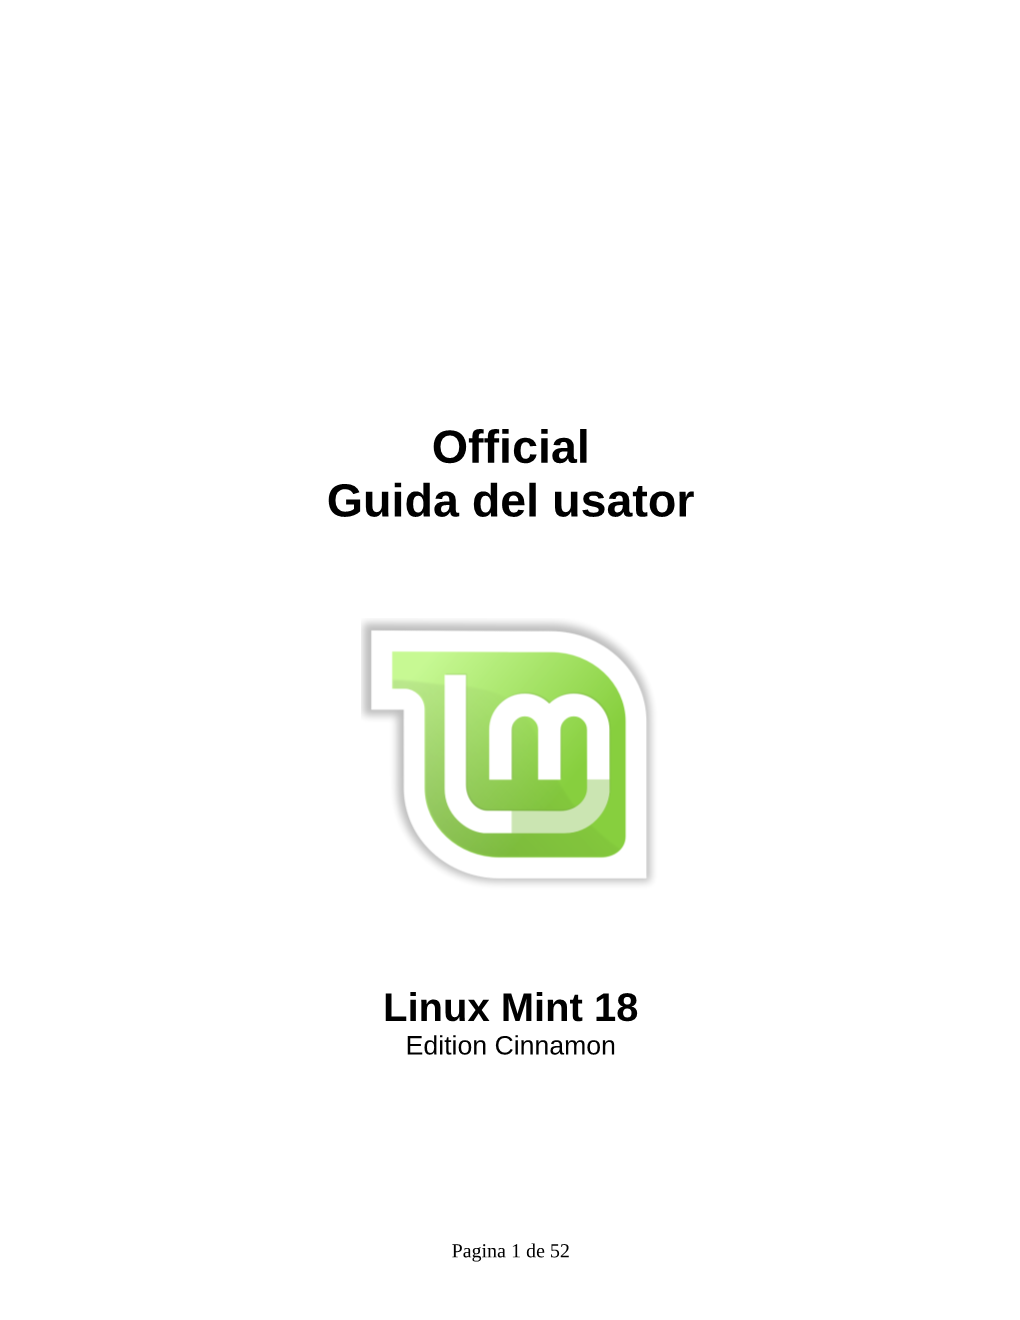 Official Guida Del Usator